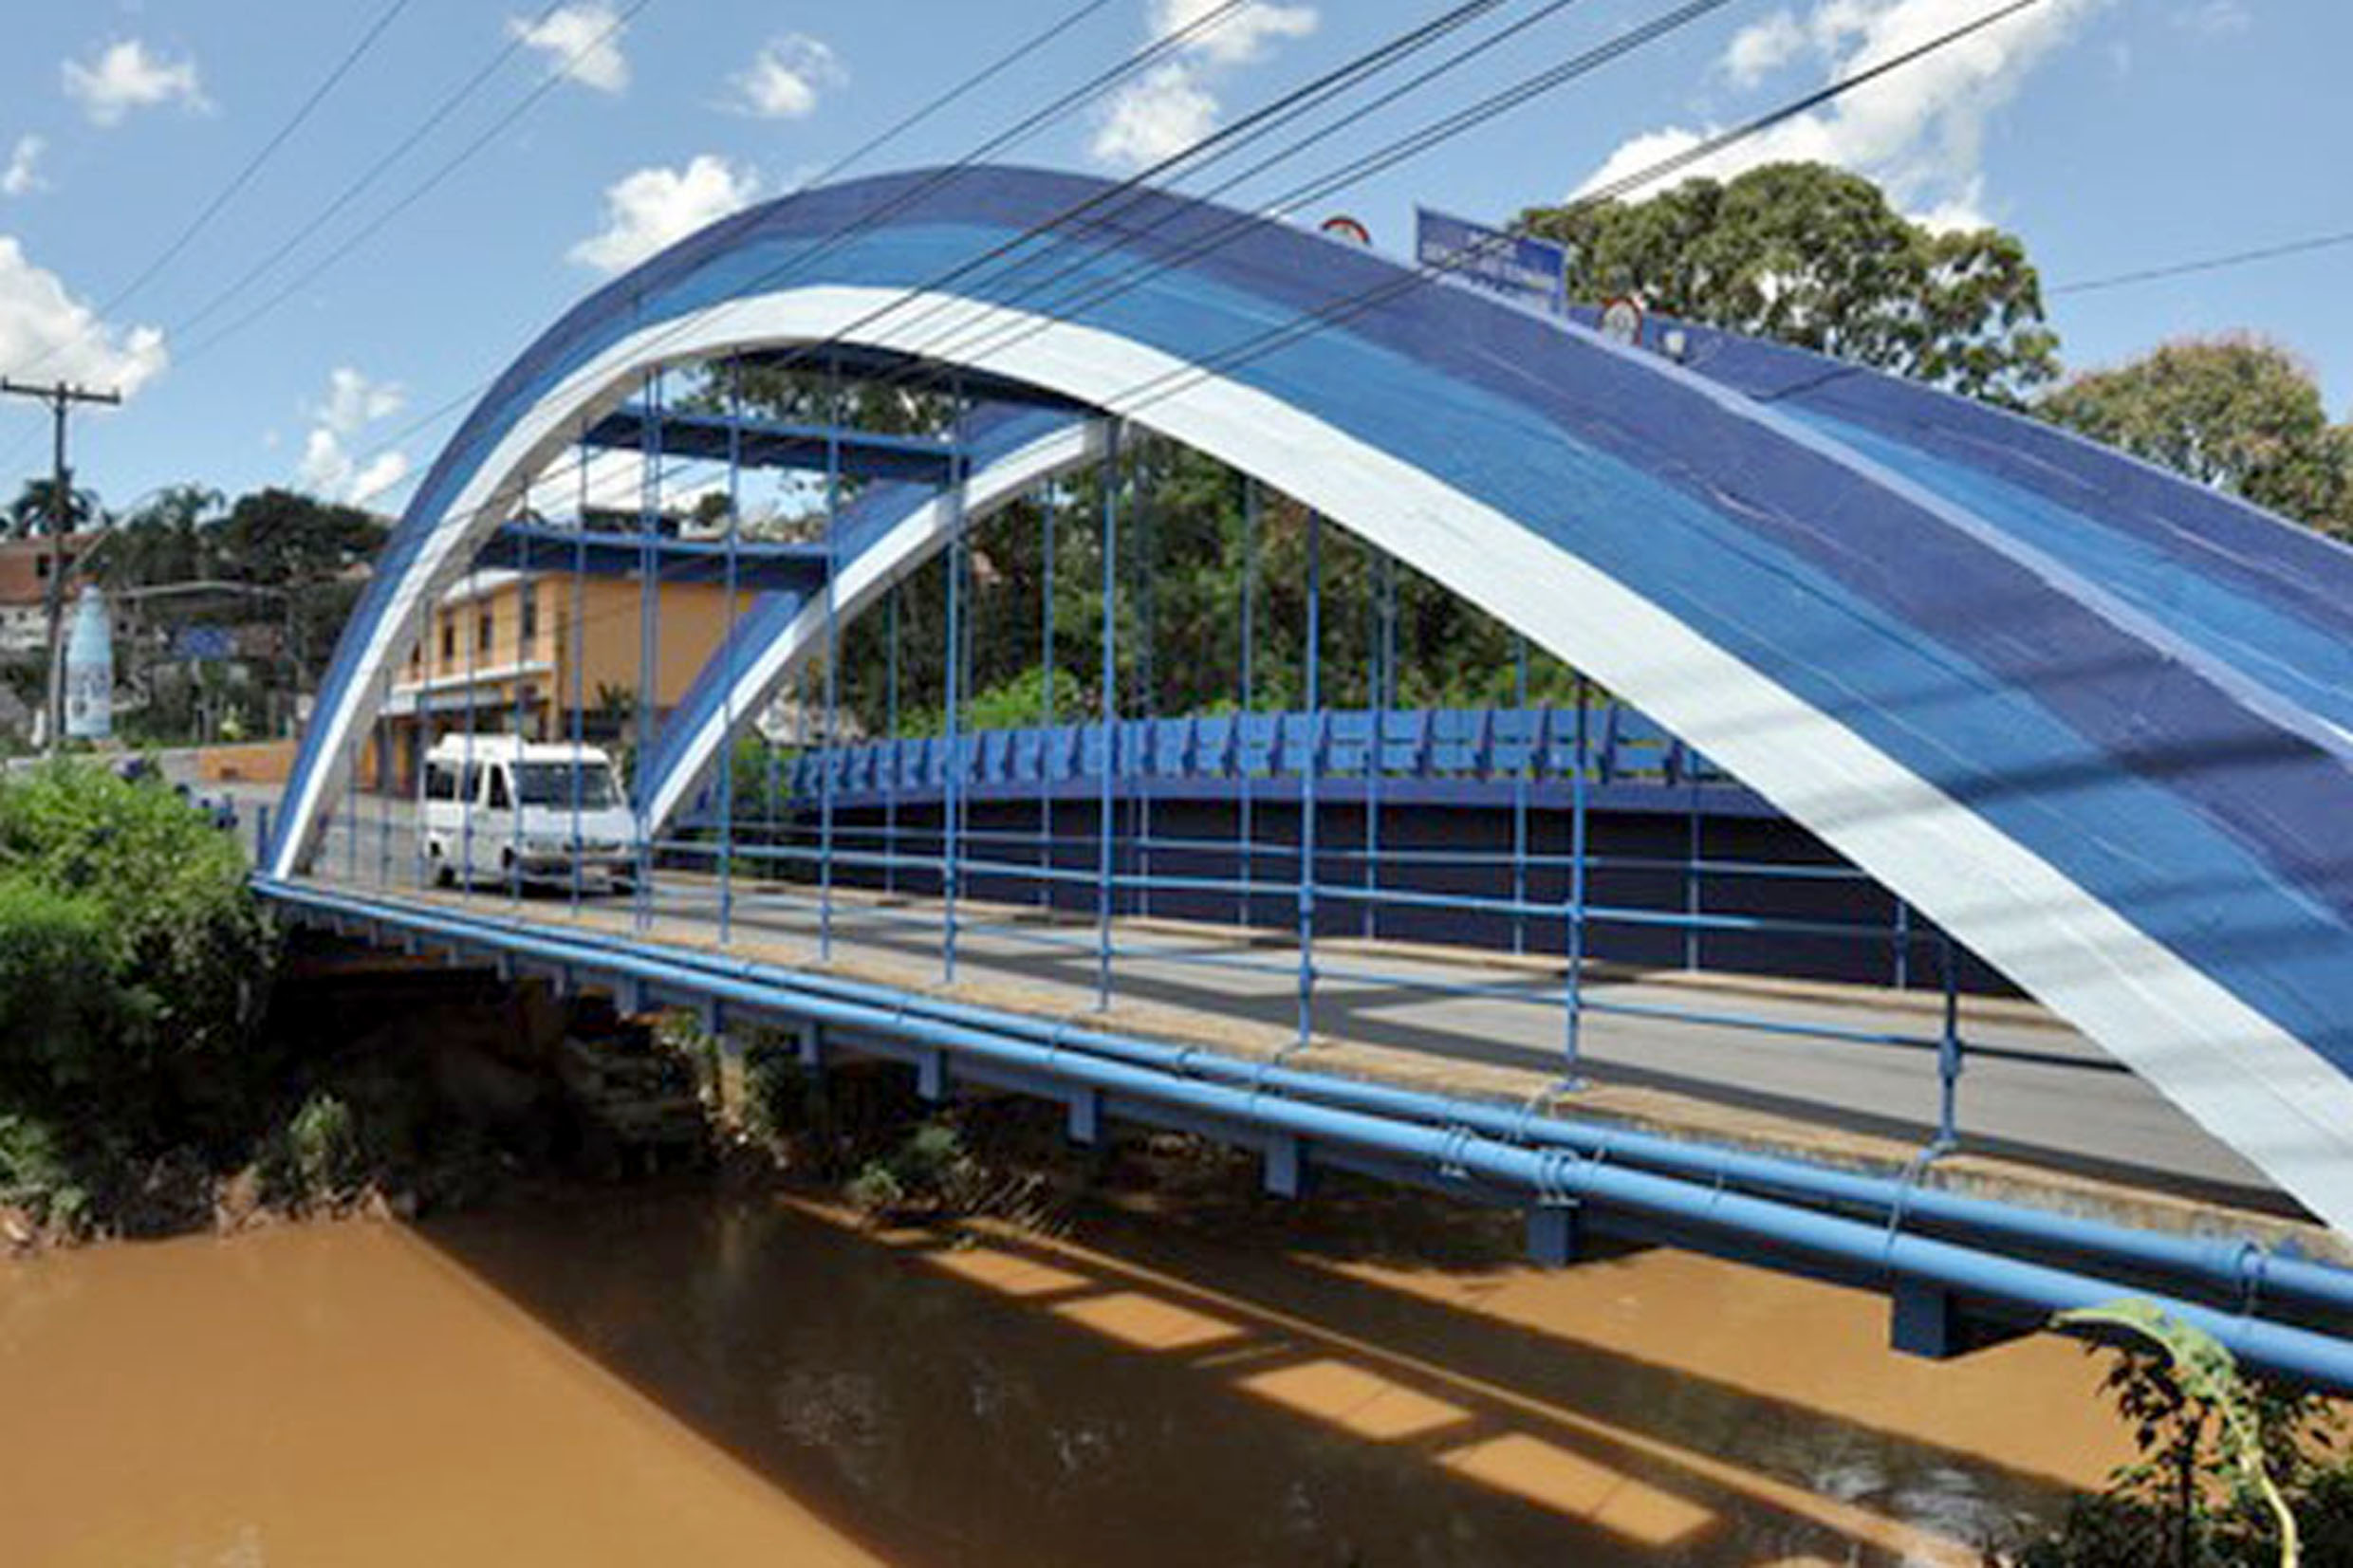 Estrutura ser construda ao lado da Ponte dos Arcos, carto postal do municpio<a style='float:right;color:#ccc' href='https://www3.al.sp.gov.br/repositorio/noticia/N-08-2020/fg252210.jpg' target=_blank><i class='bi bi-zoom-in'></i> Clique para ver a imagem </a>